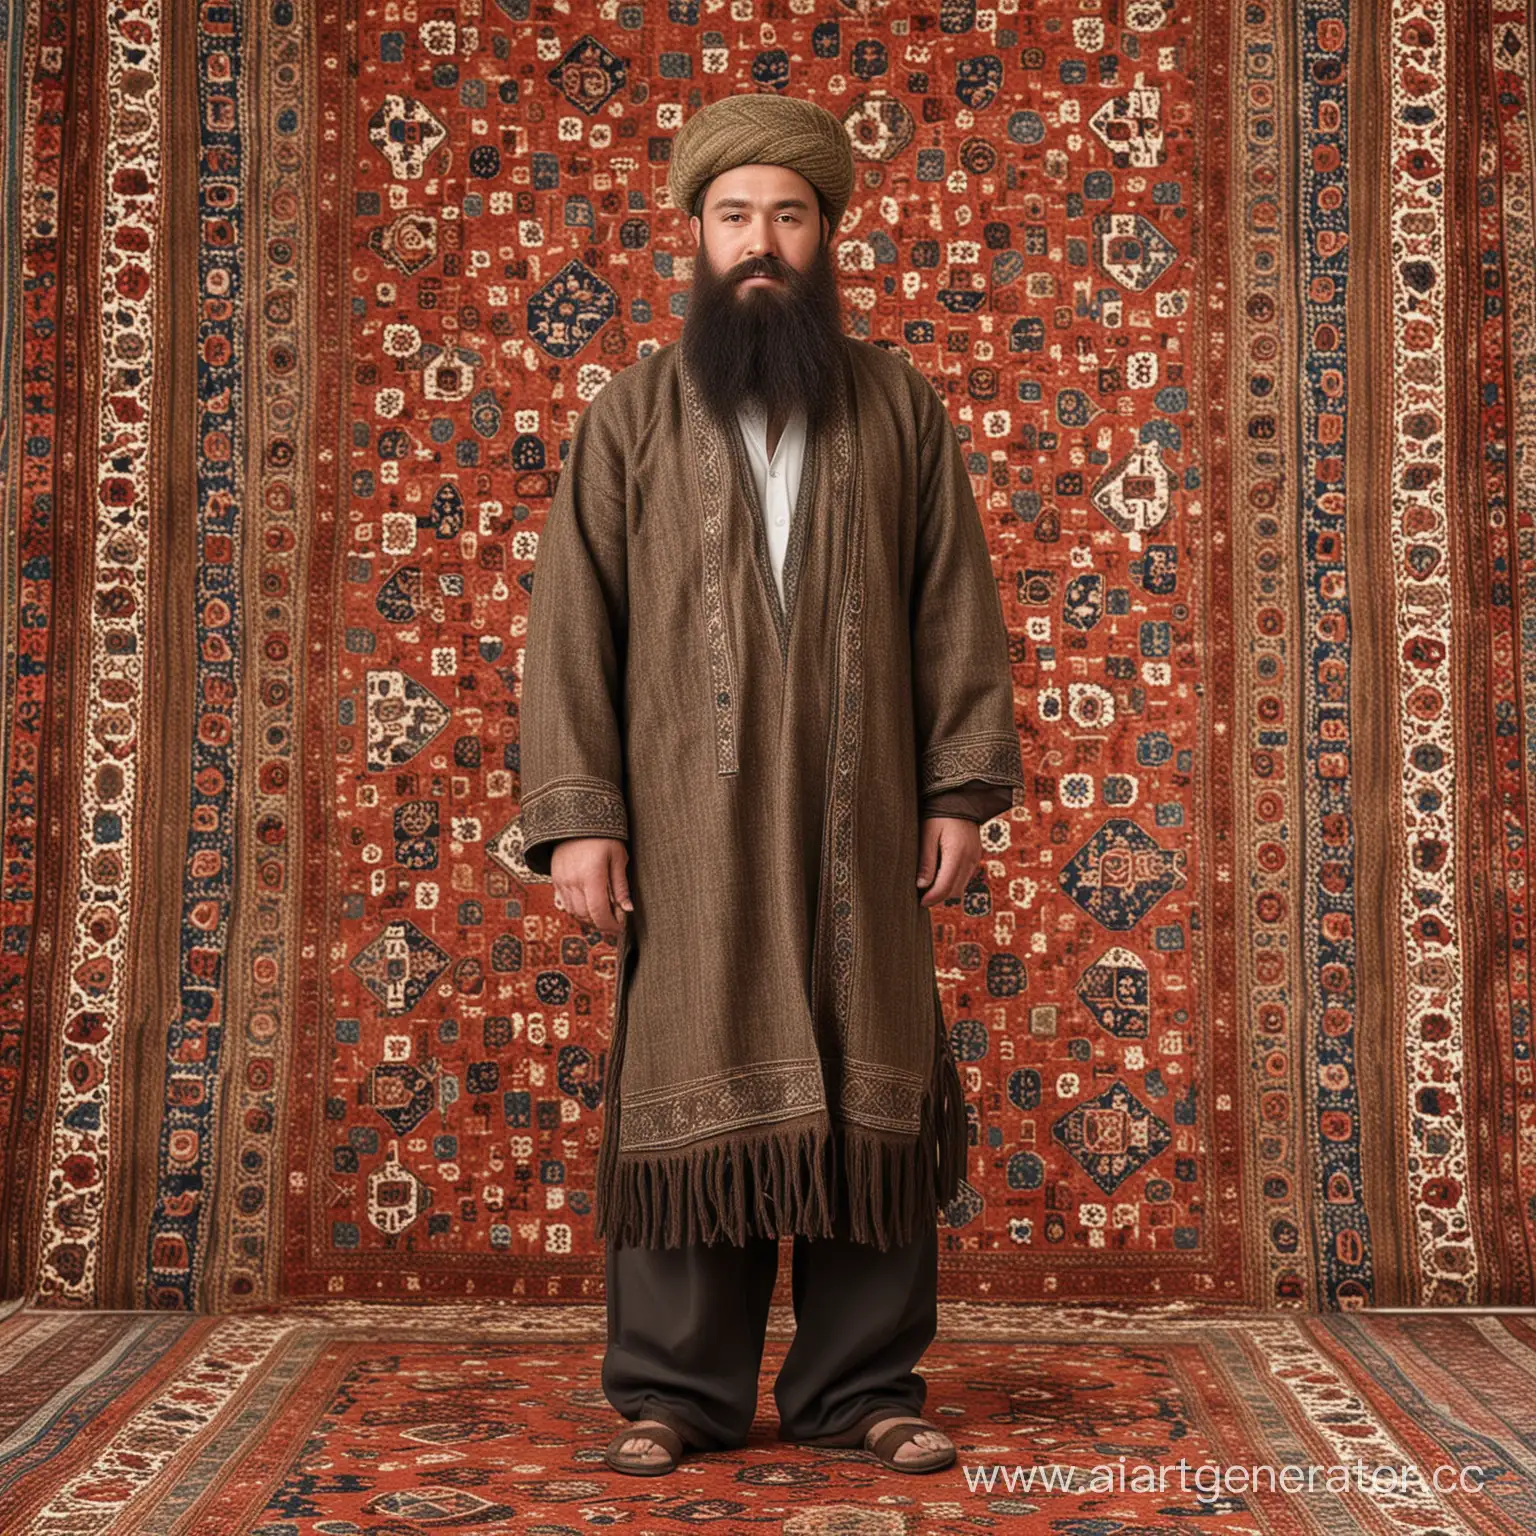 Создай узбека в полный рост, который стоит на ковре, у него большое пузо и борода.